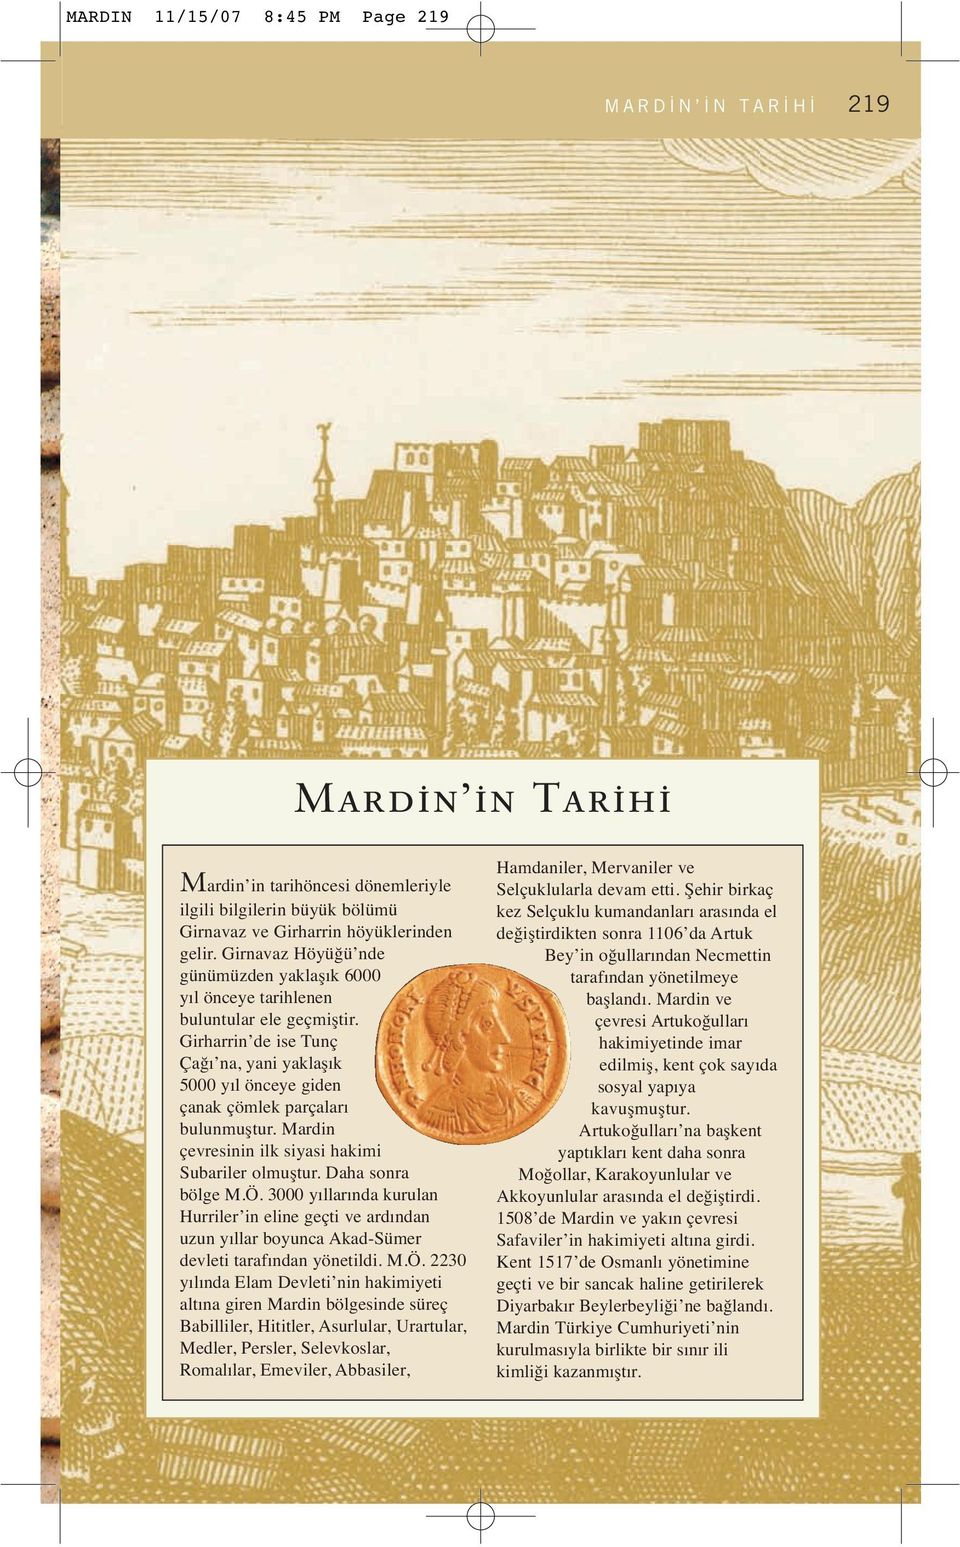 Mardin çevresinin ilk siyasi hakimi Subariler olmuştur. Daha sonra bölge M.Ö. 3000 yıllarında kurulan Hurriler in eline geçti ve ardından uzun yıllar boyunca Akad-Sümer devleti tarafından yönetildi.